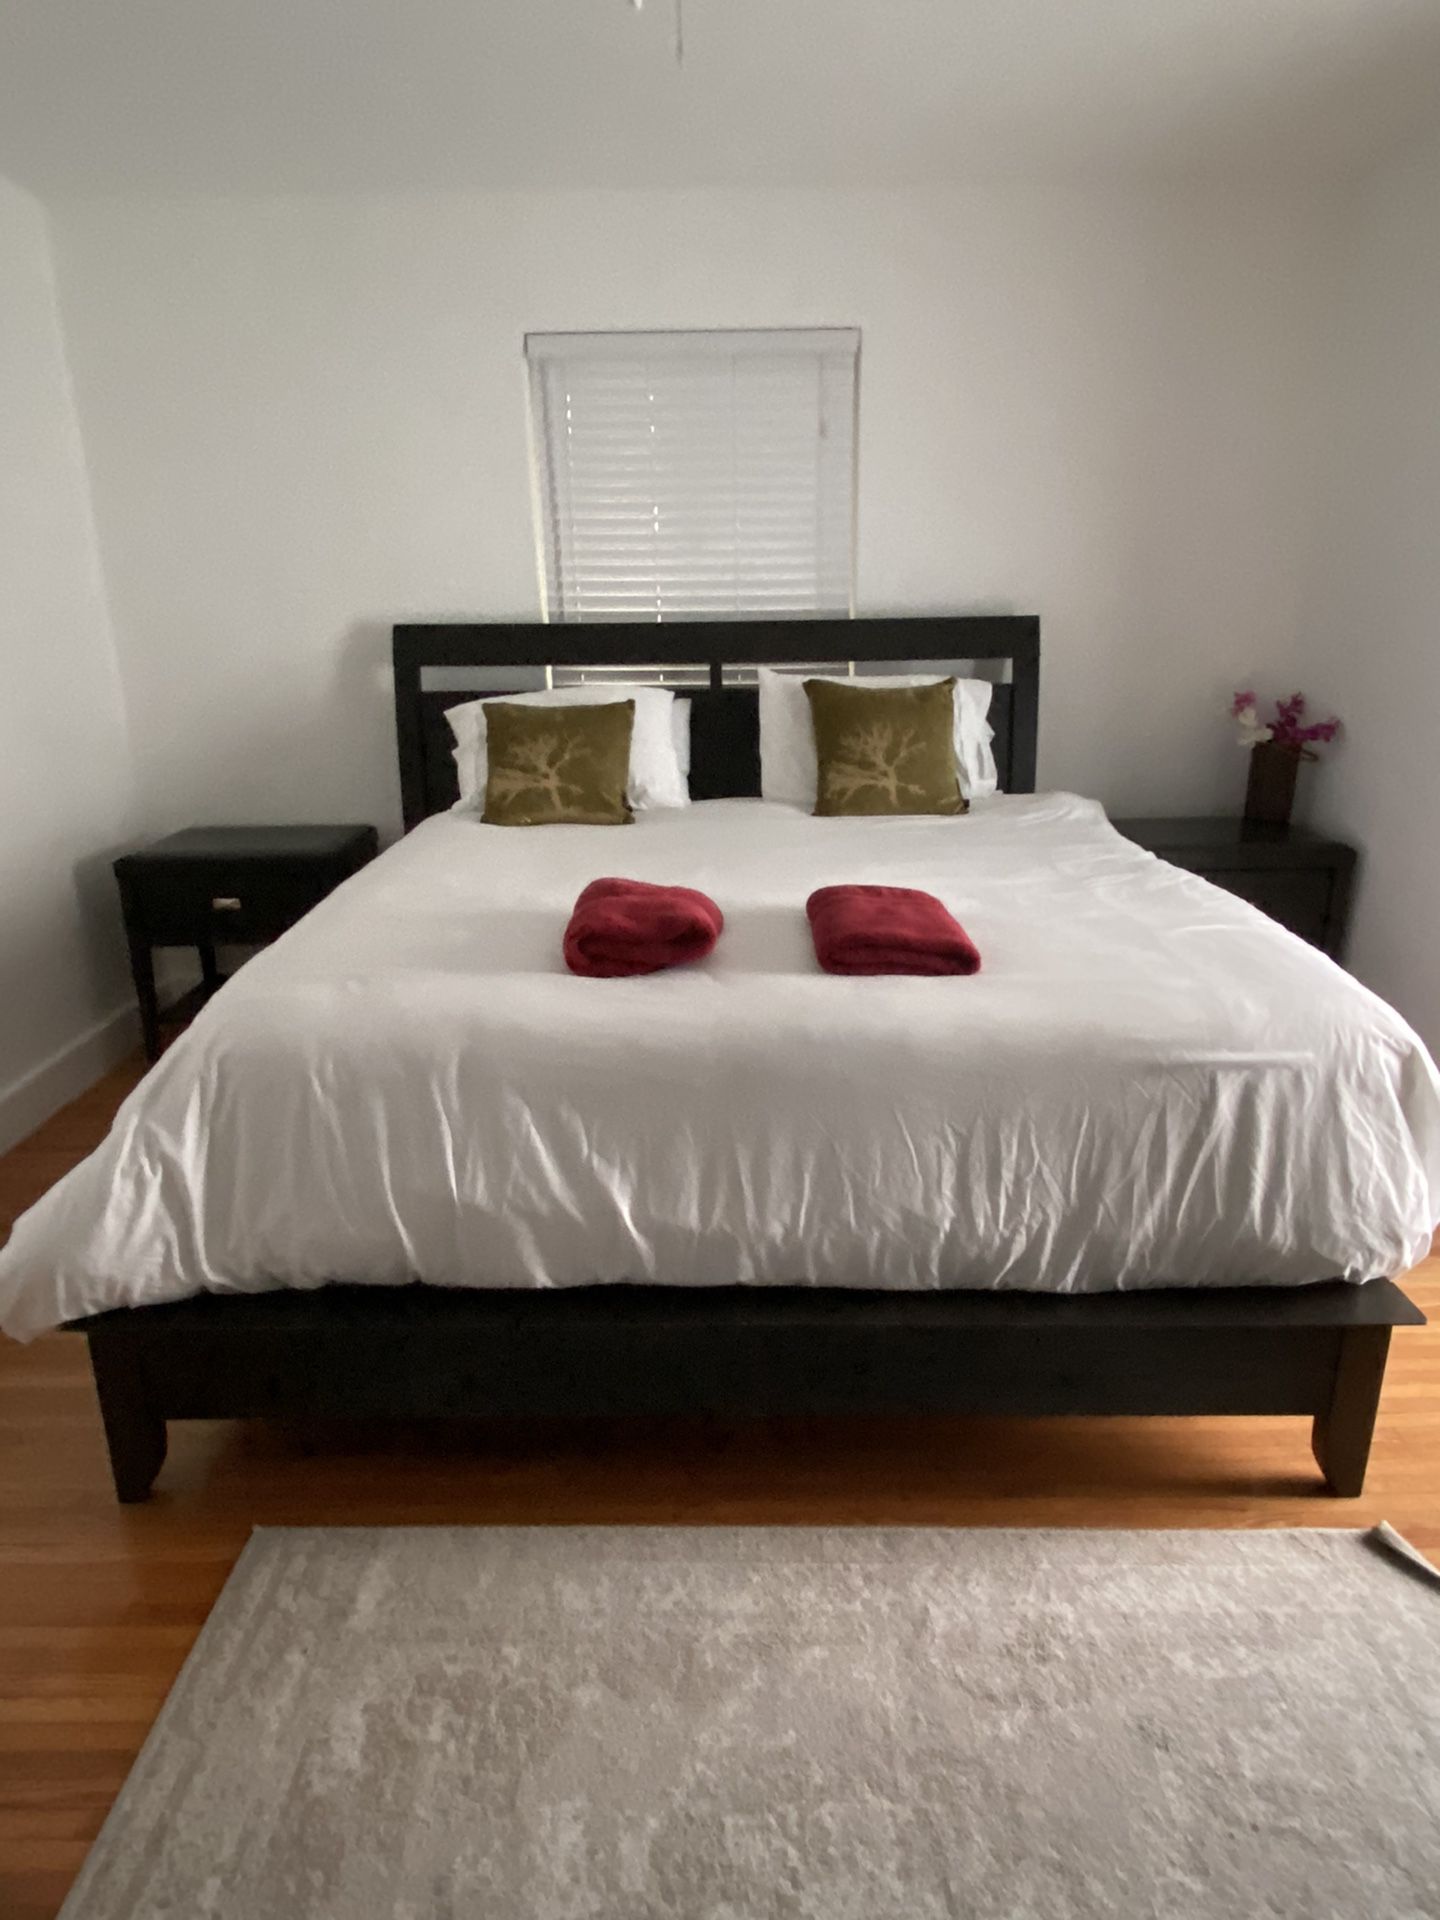 King bedroom set - Frame, nightstands, dresser. Mattress & box spring optional